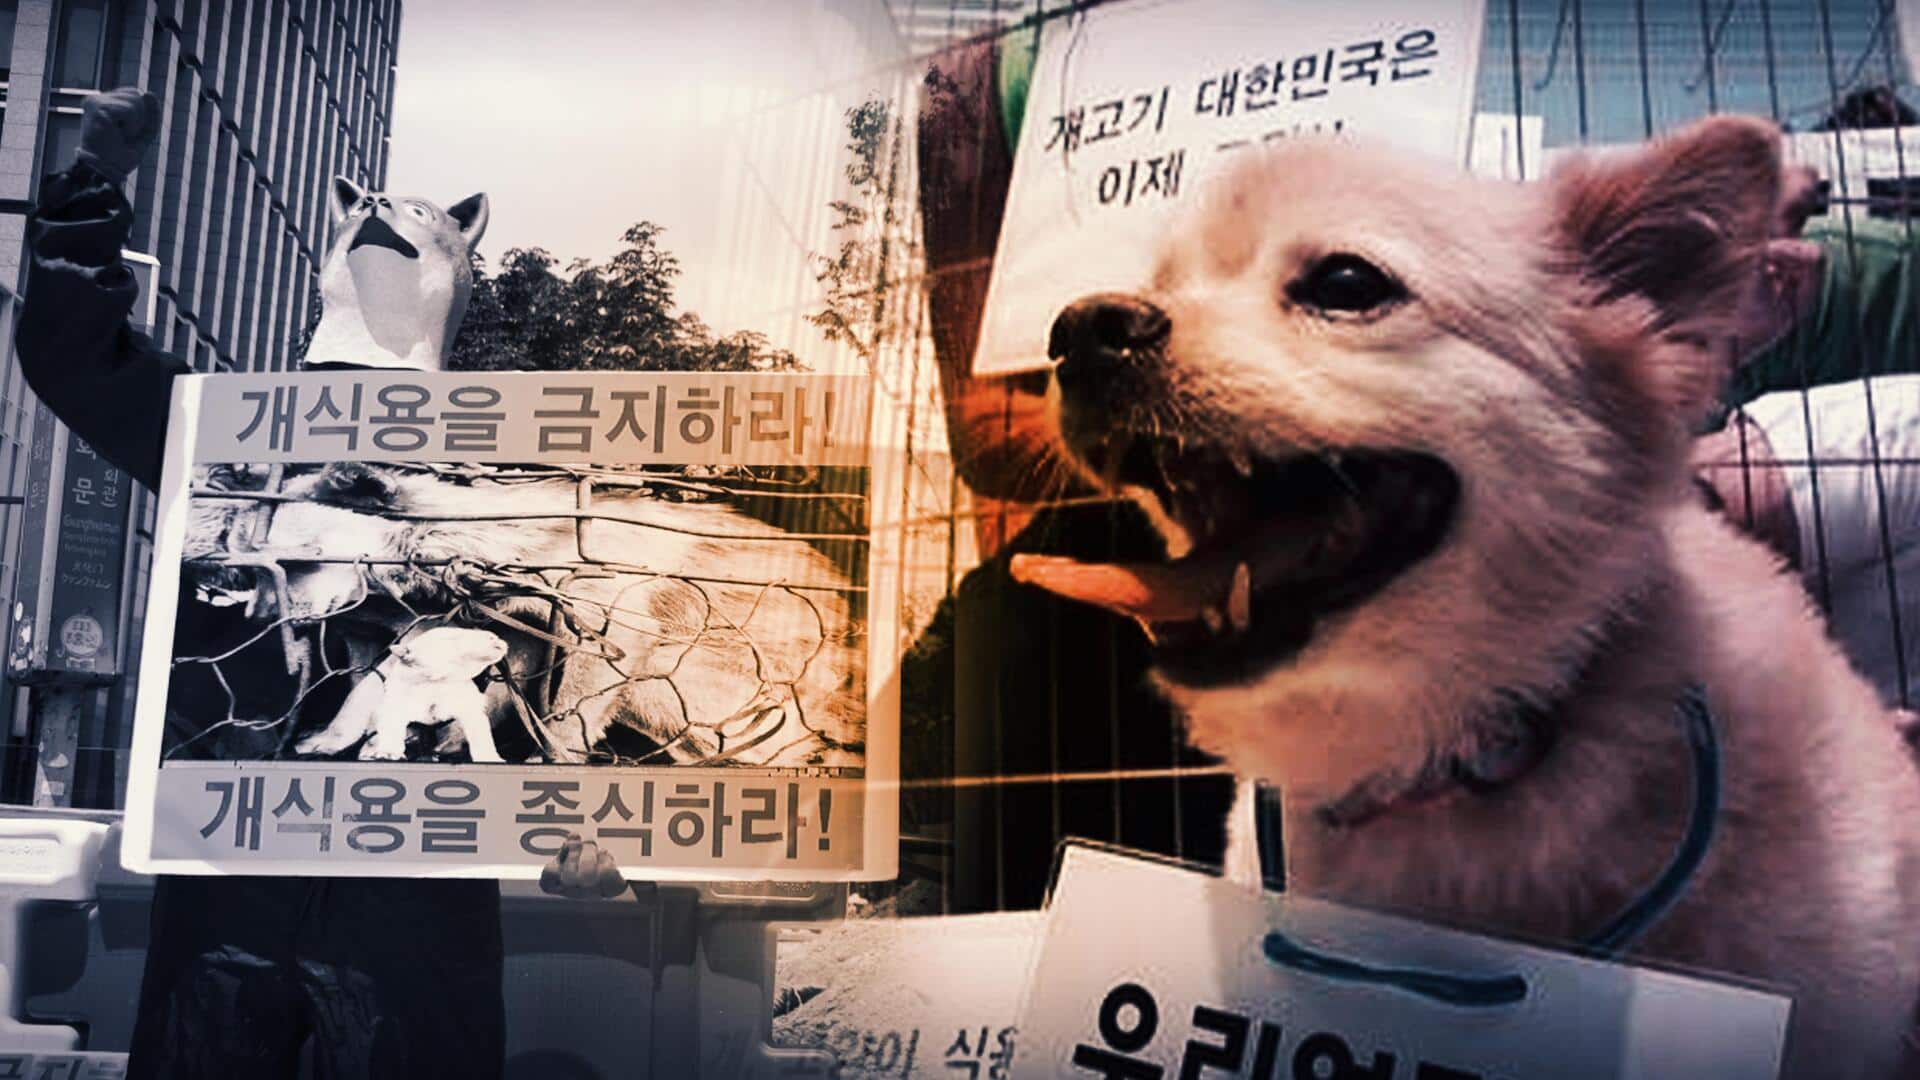 दक्षिण कोरिया: कुत्ते का मांस खाने की सदियों पुरानी परंपरा होगी खत्म, विधेयक पारित